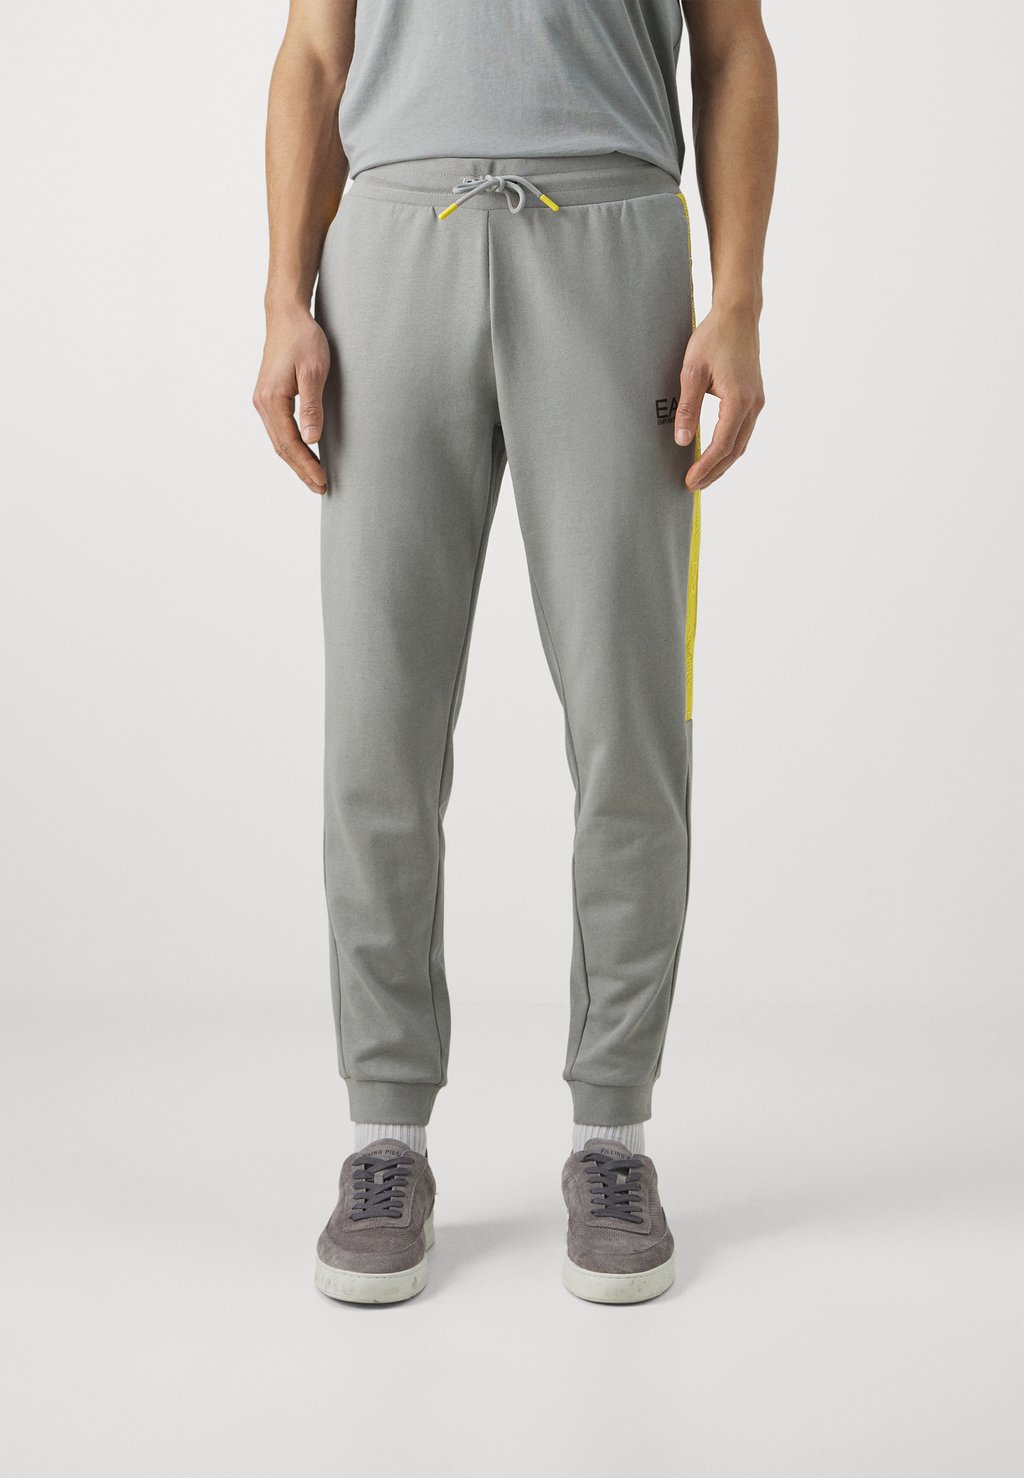 Спортивные брюки Trouser EA7 Emporio Armani, цвет grigio chiaro спортивные брюки comfort campagnolo цвет grigio